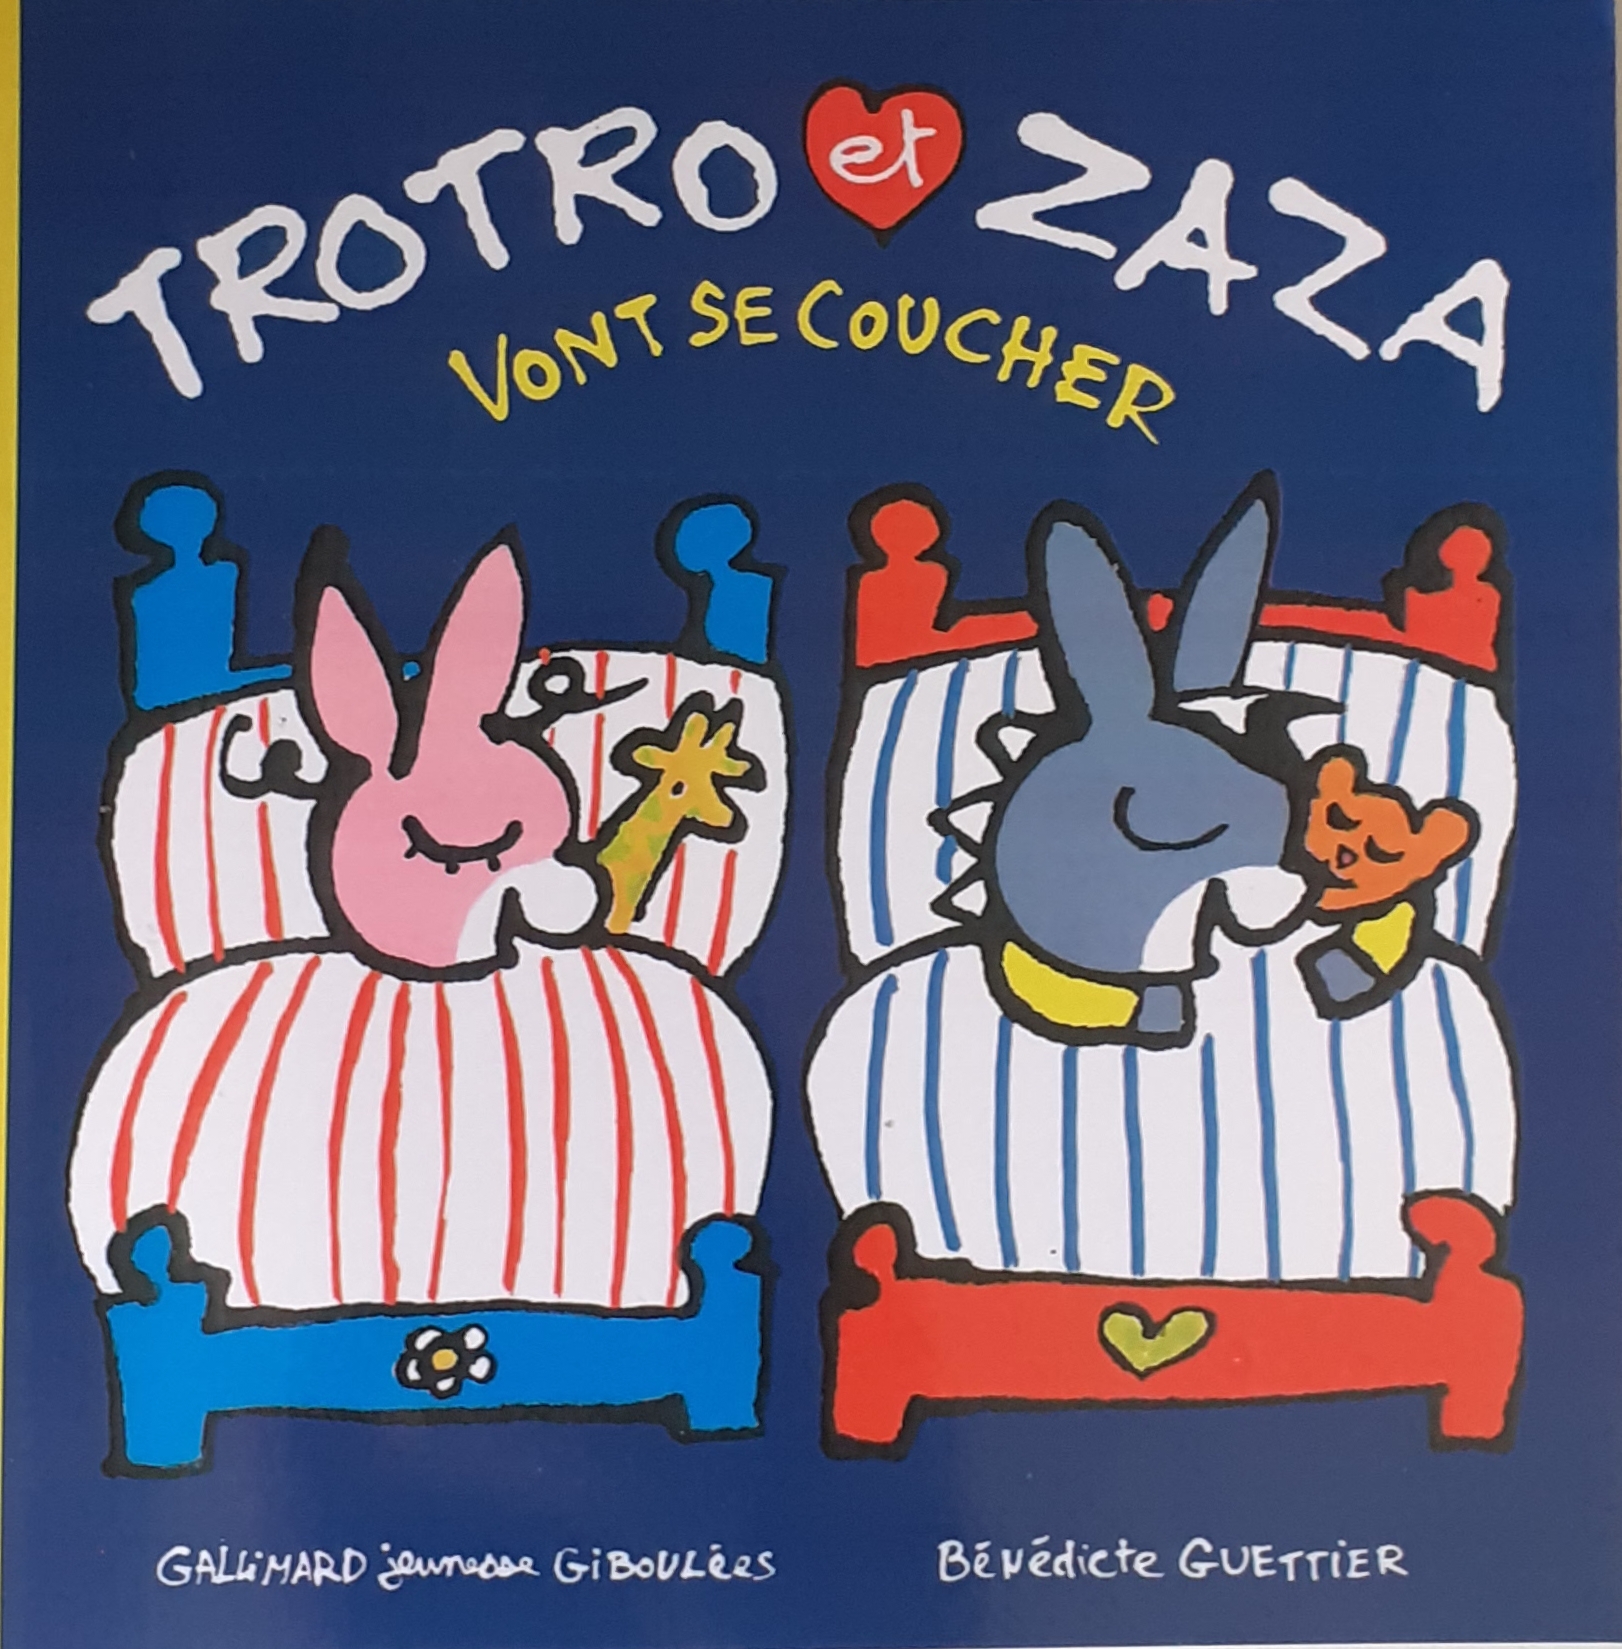 کتاب داستان فرانسه trotro et zaza به رختخواب خواهد رفت Vont se coucher